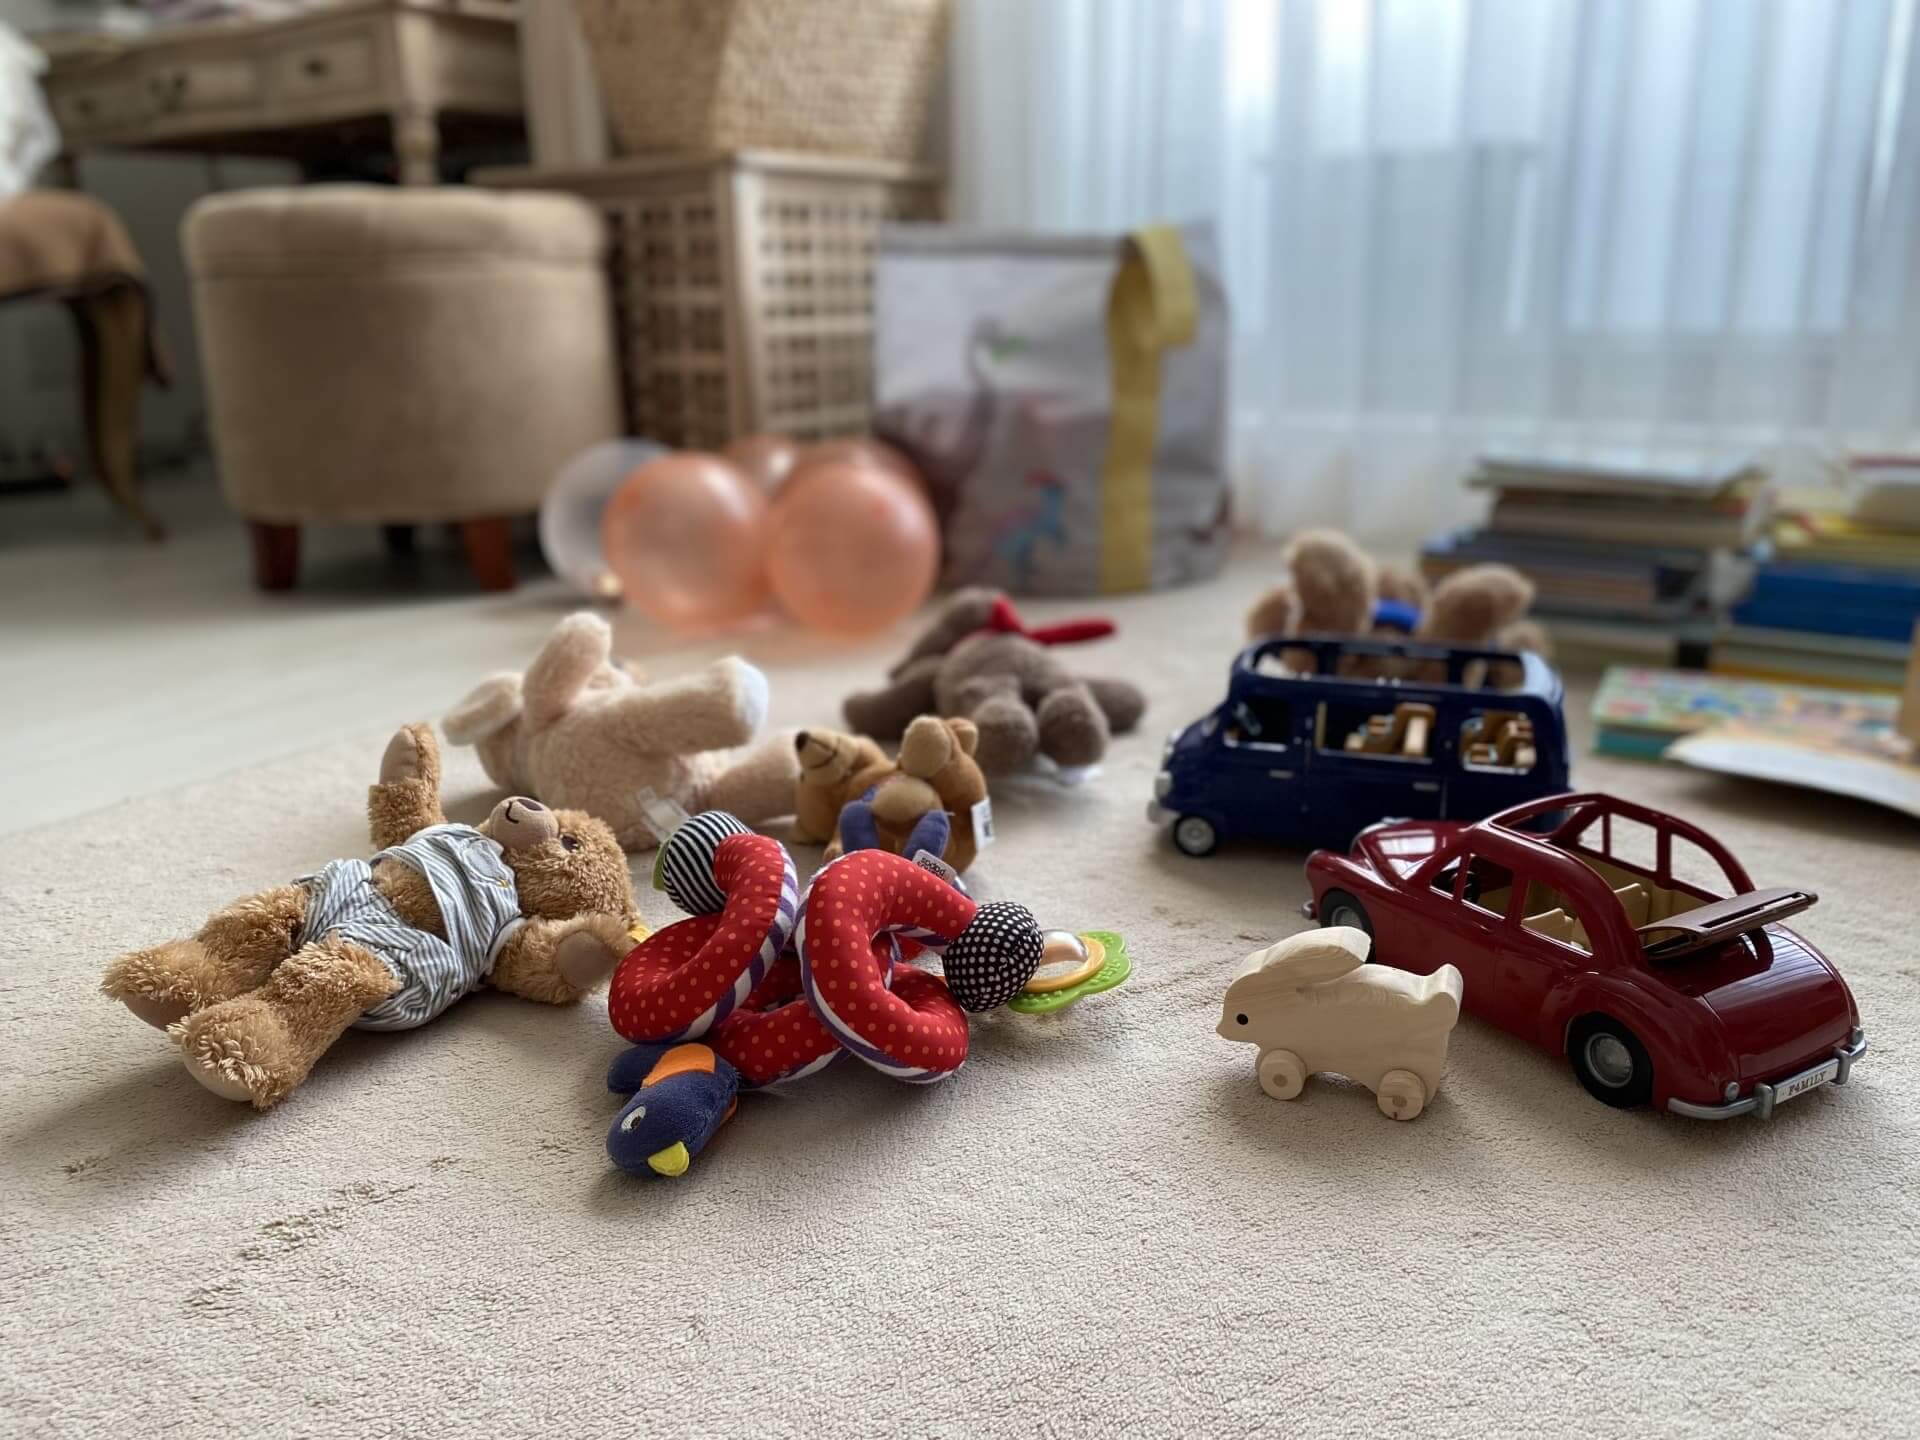 子どもが遊んだ後の玩具が床に乱雑に散らかって残っている写真